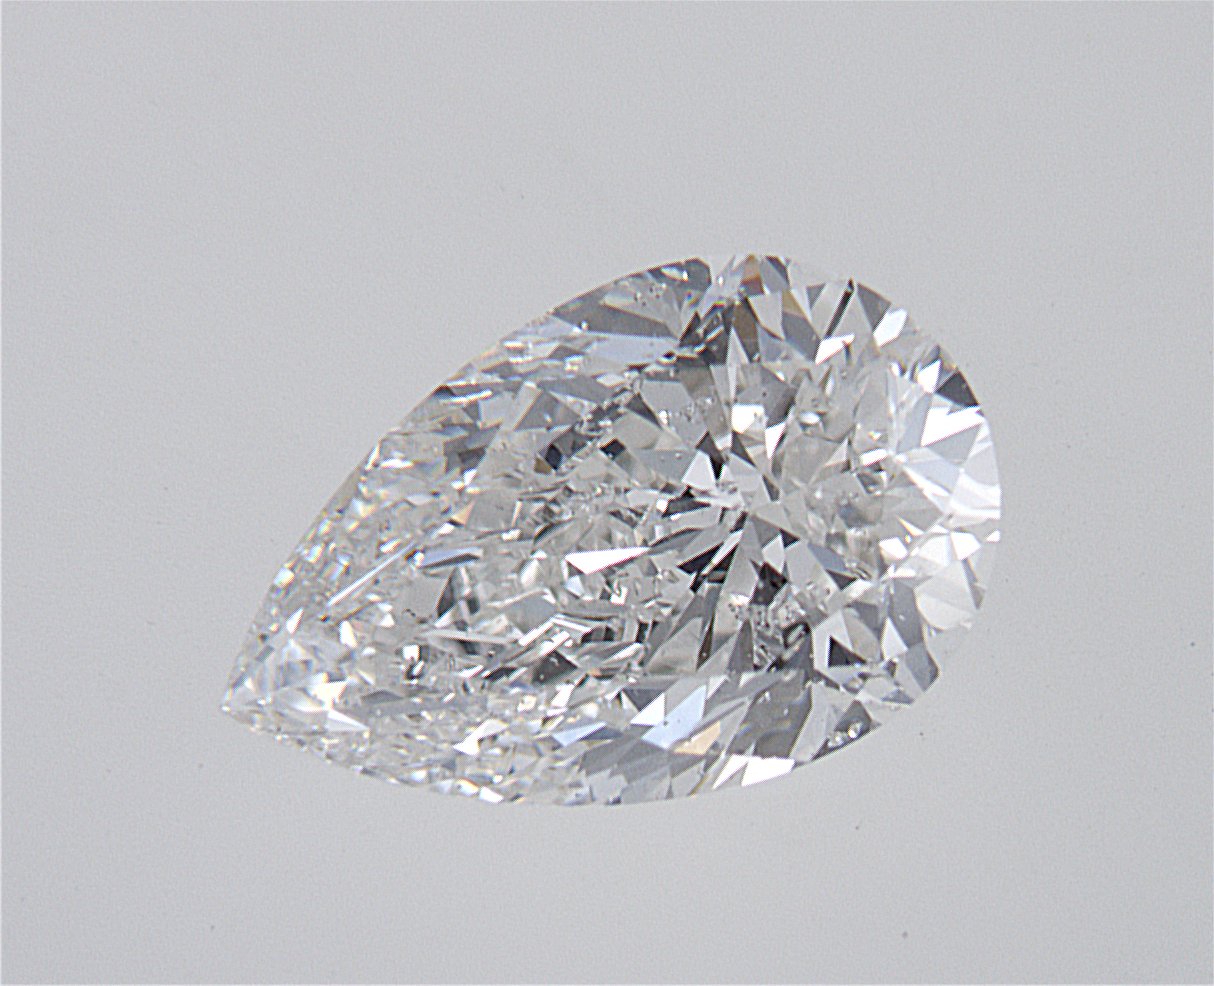 1.6 Carat Pear Cut Natural Diamond